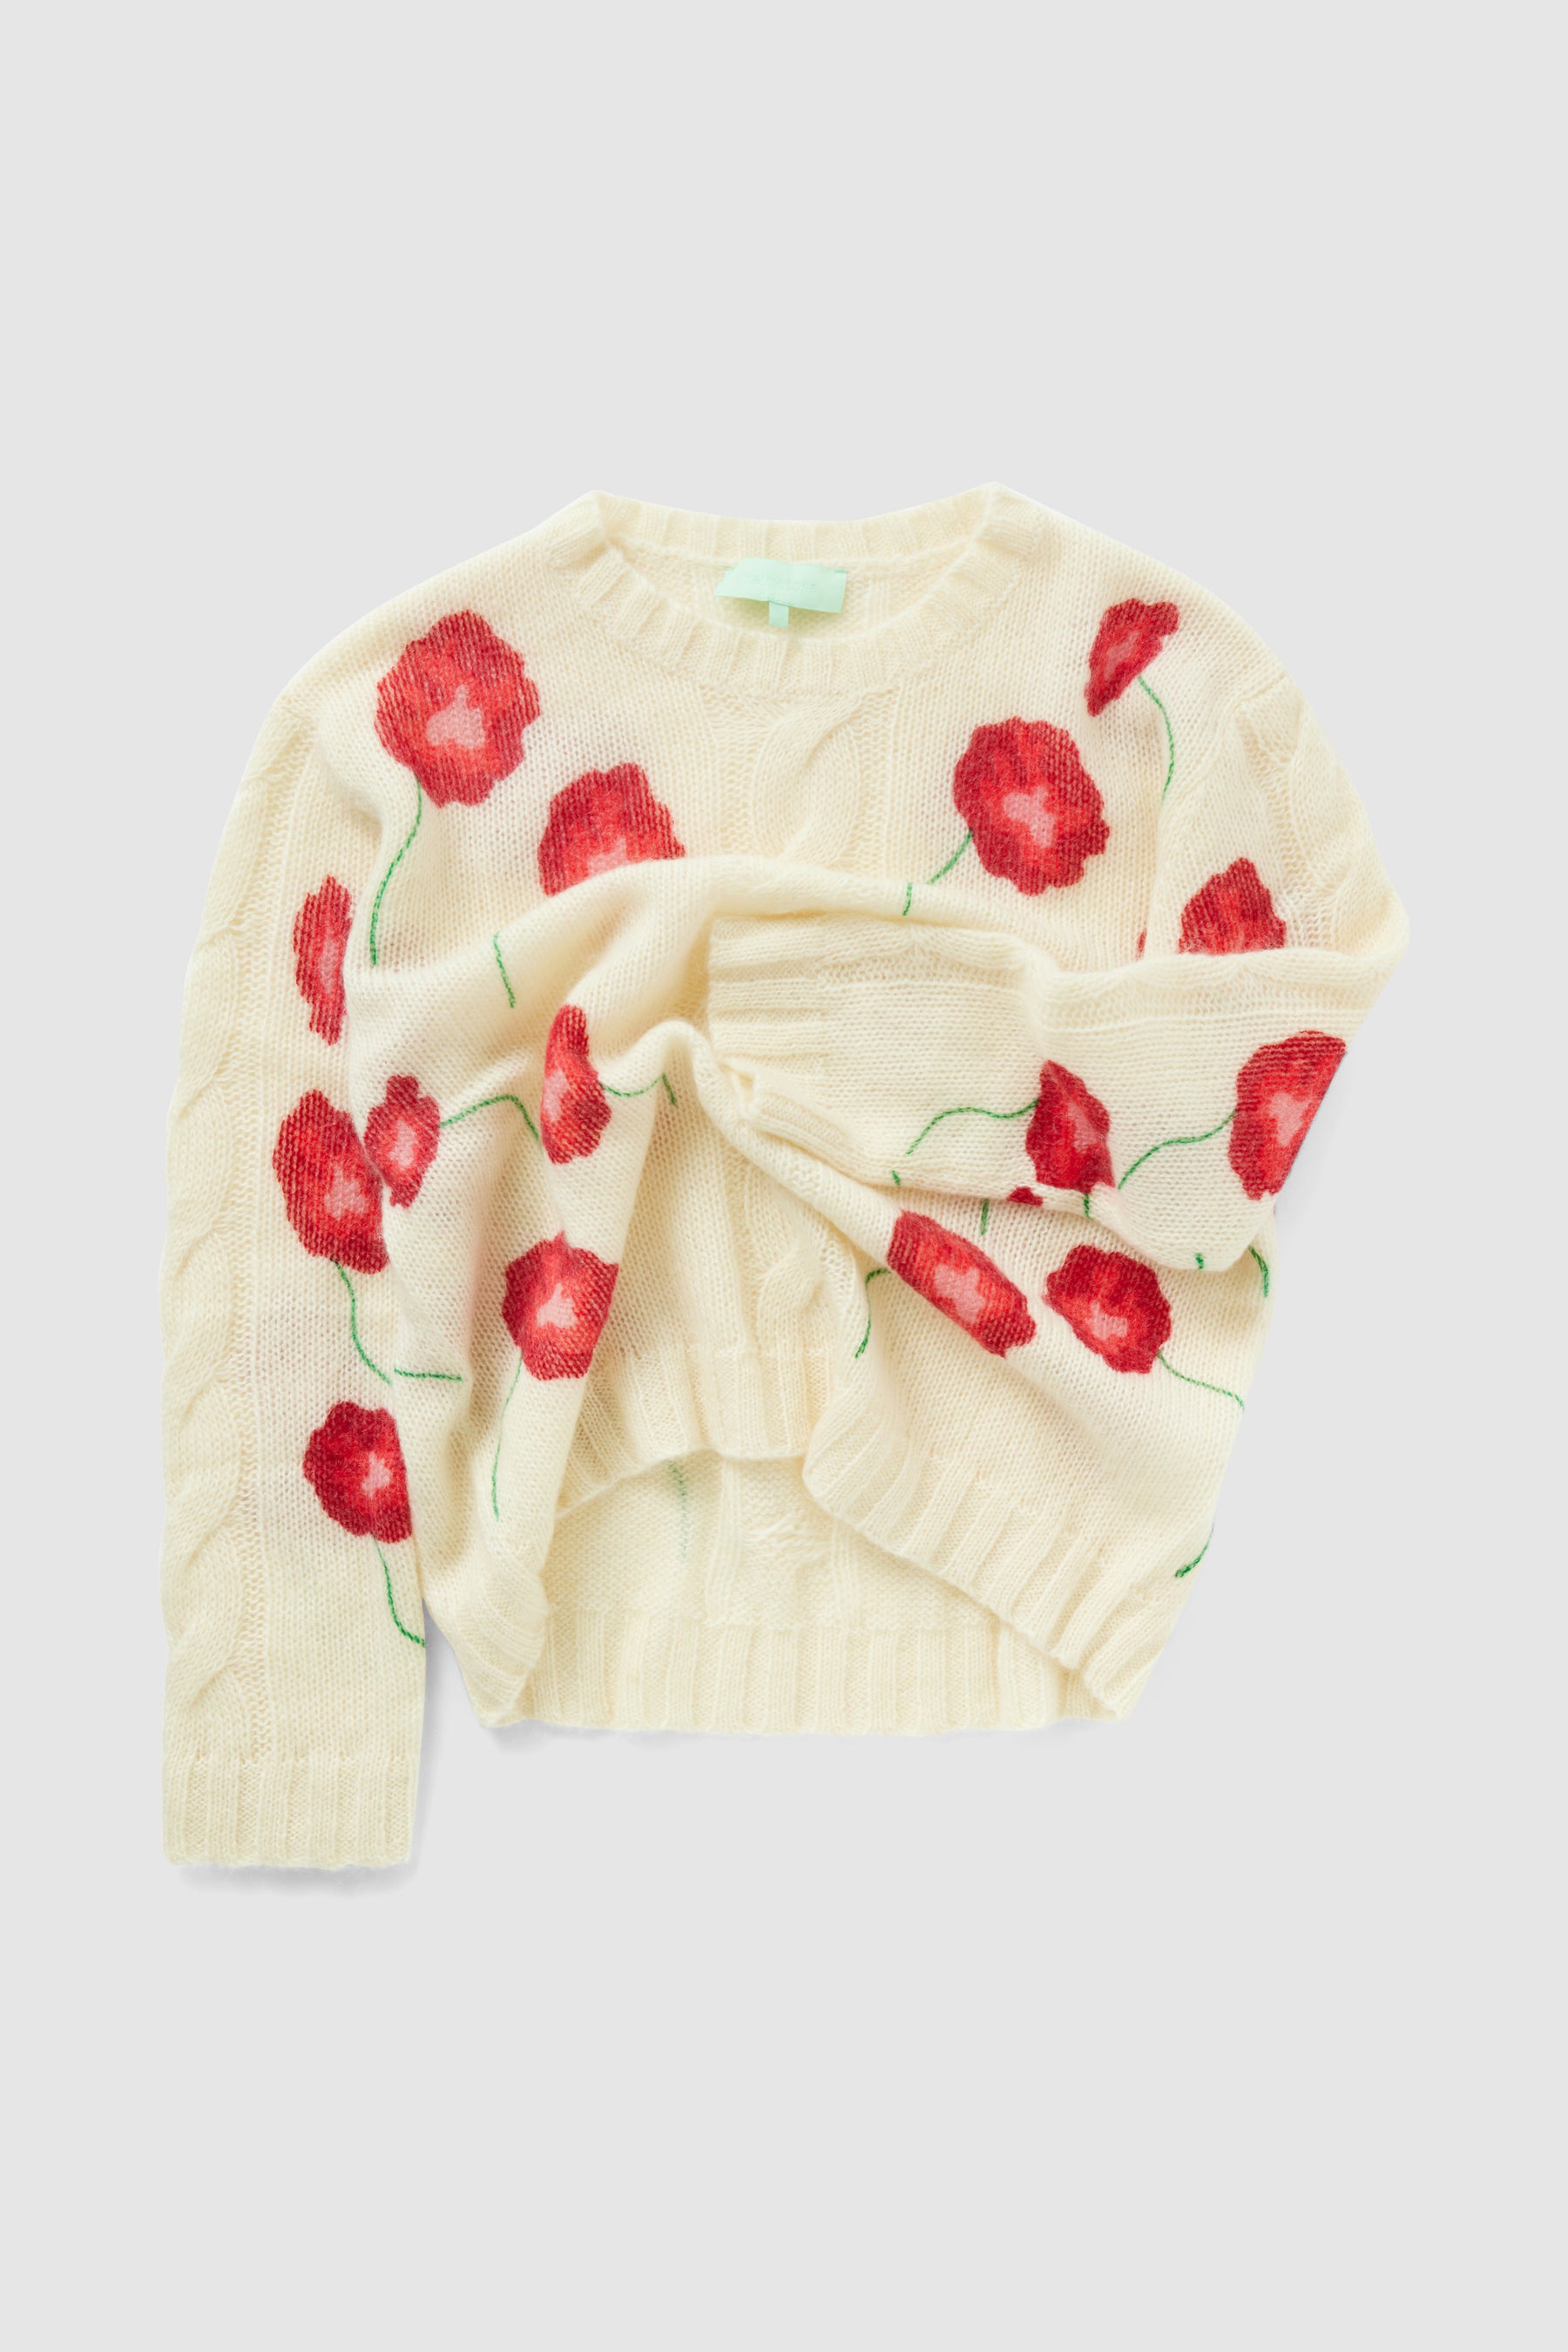 Ellis sweater in white Poppy knit